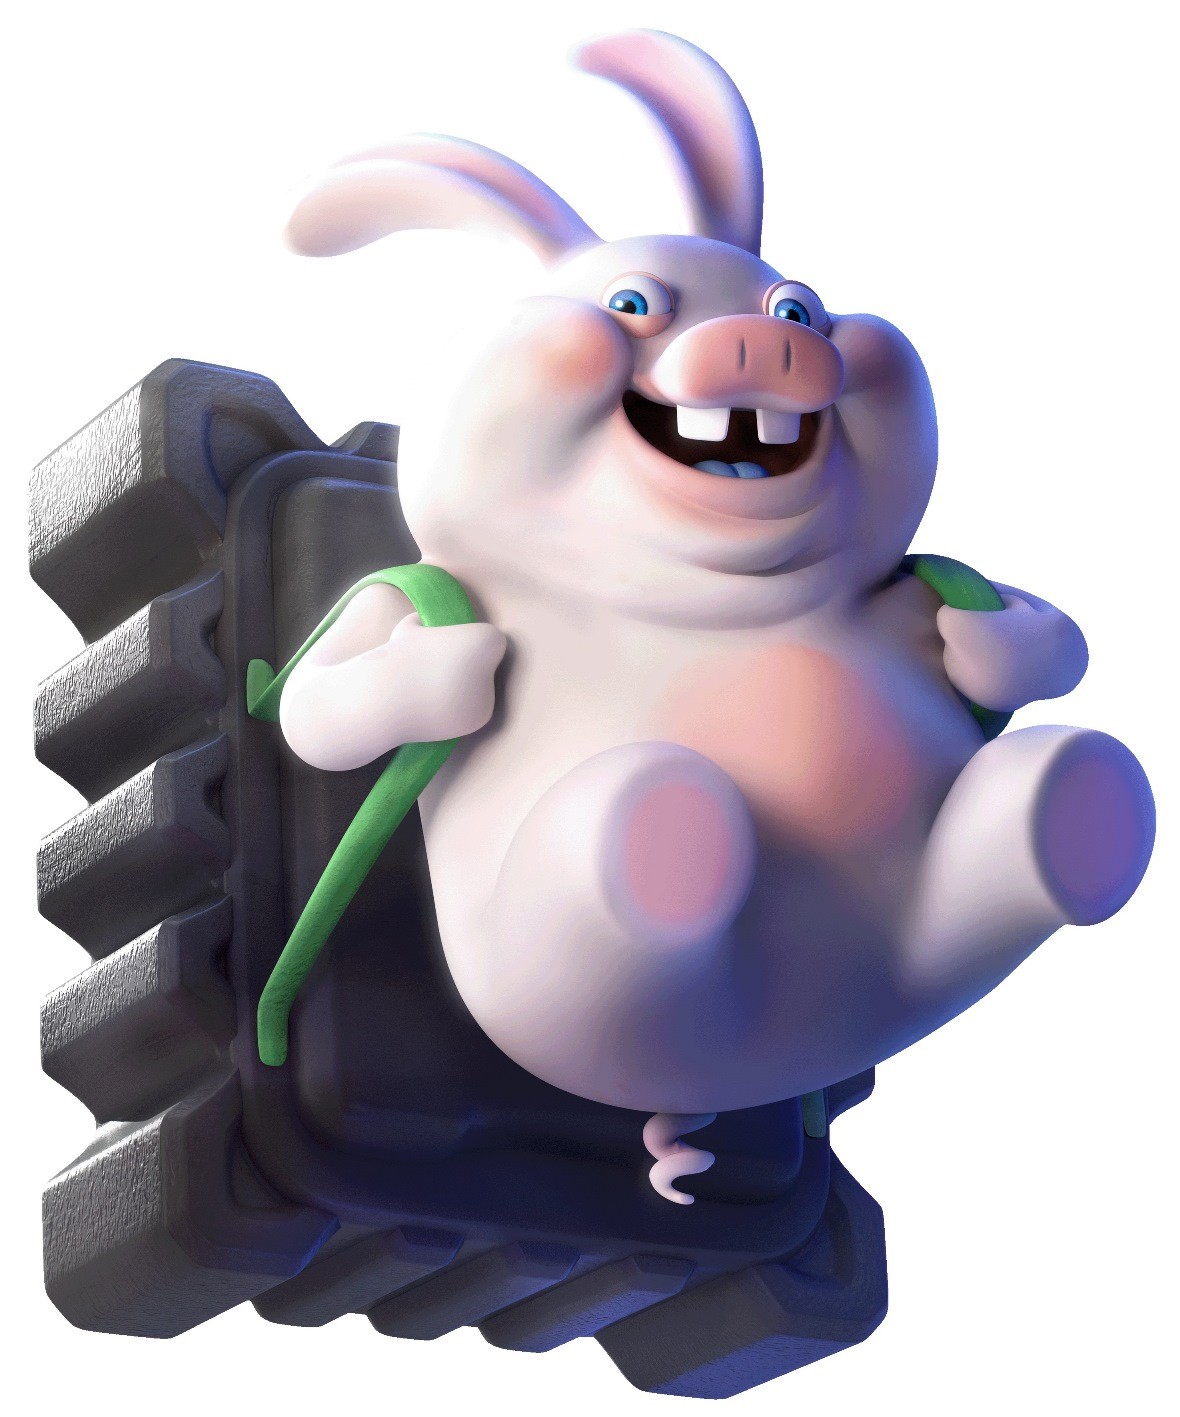 【Switch】育碧发布《马力欧+疯狂兔子：星耀之愿》新艺术图 10月20日发售-第3张